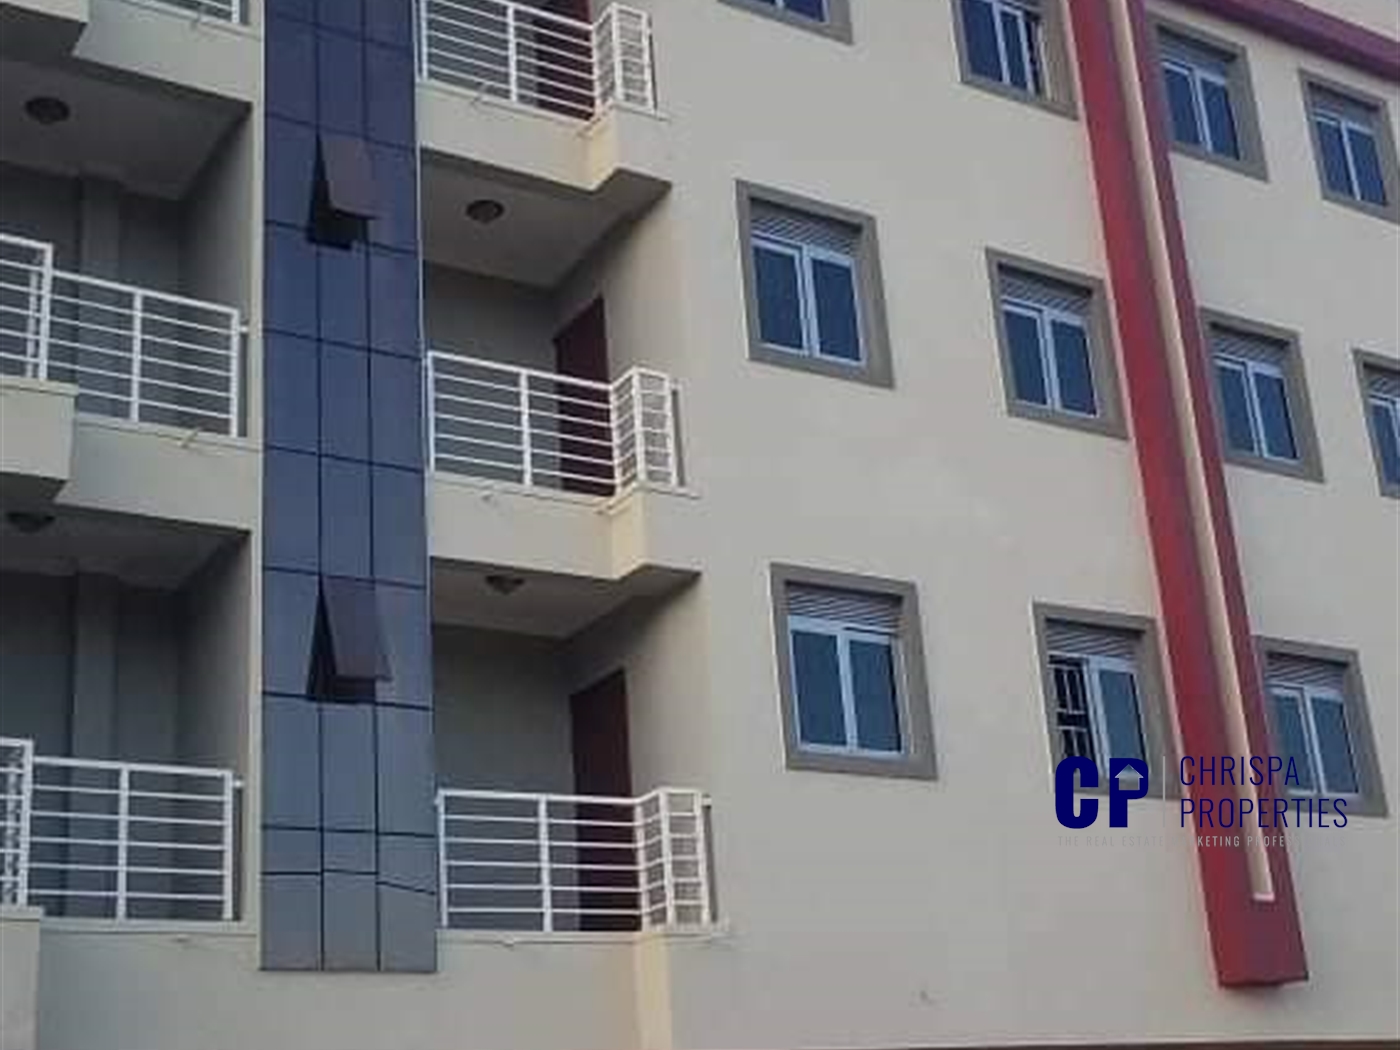 Apartment block for sale in Kyaliwajjala Kampala